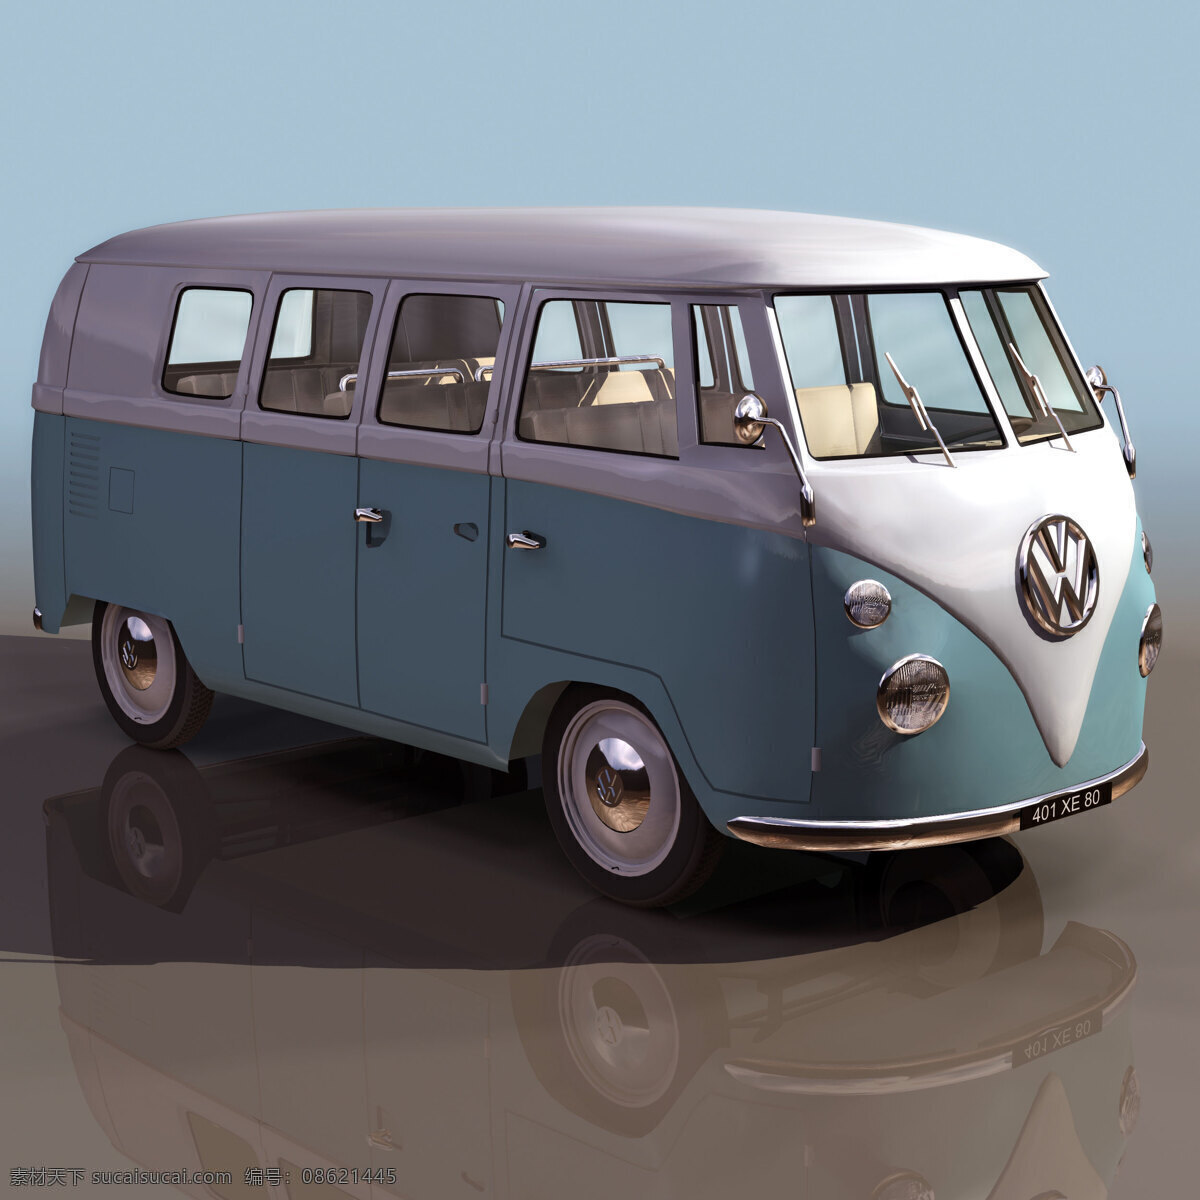 van cmb volkswagen 大众 小巴 客车 vw minibus 机动车辆 3d模型素材 电器模型